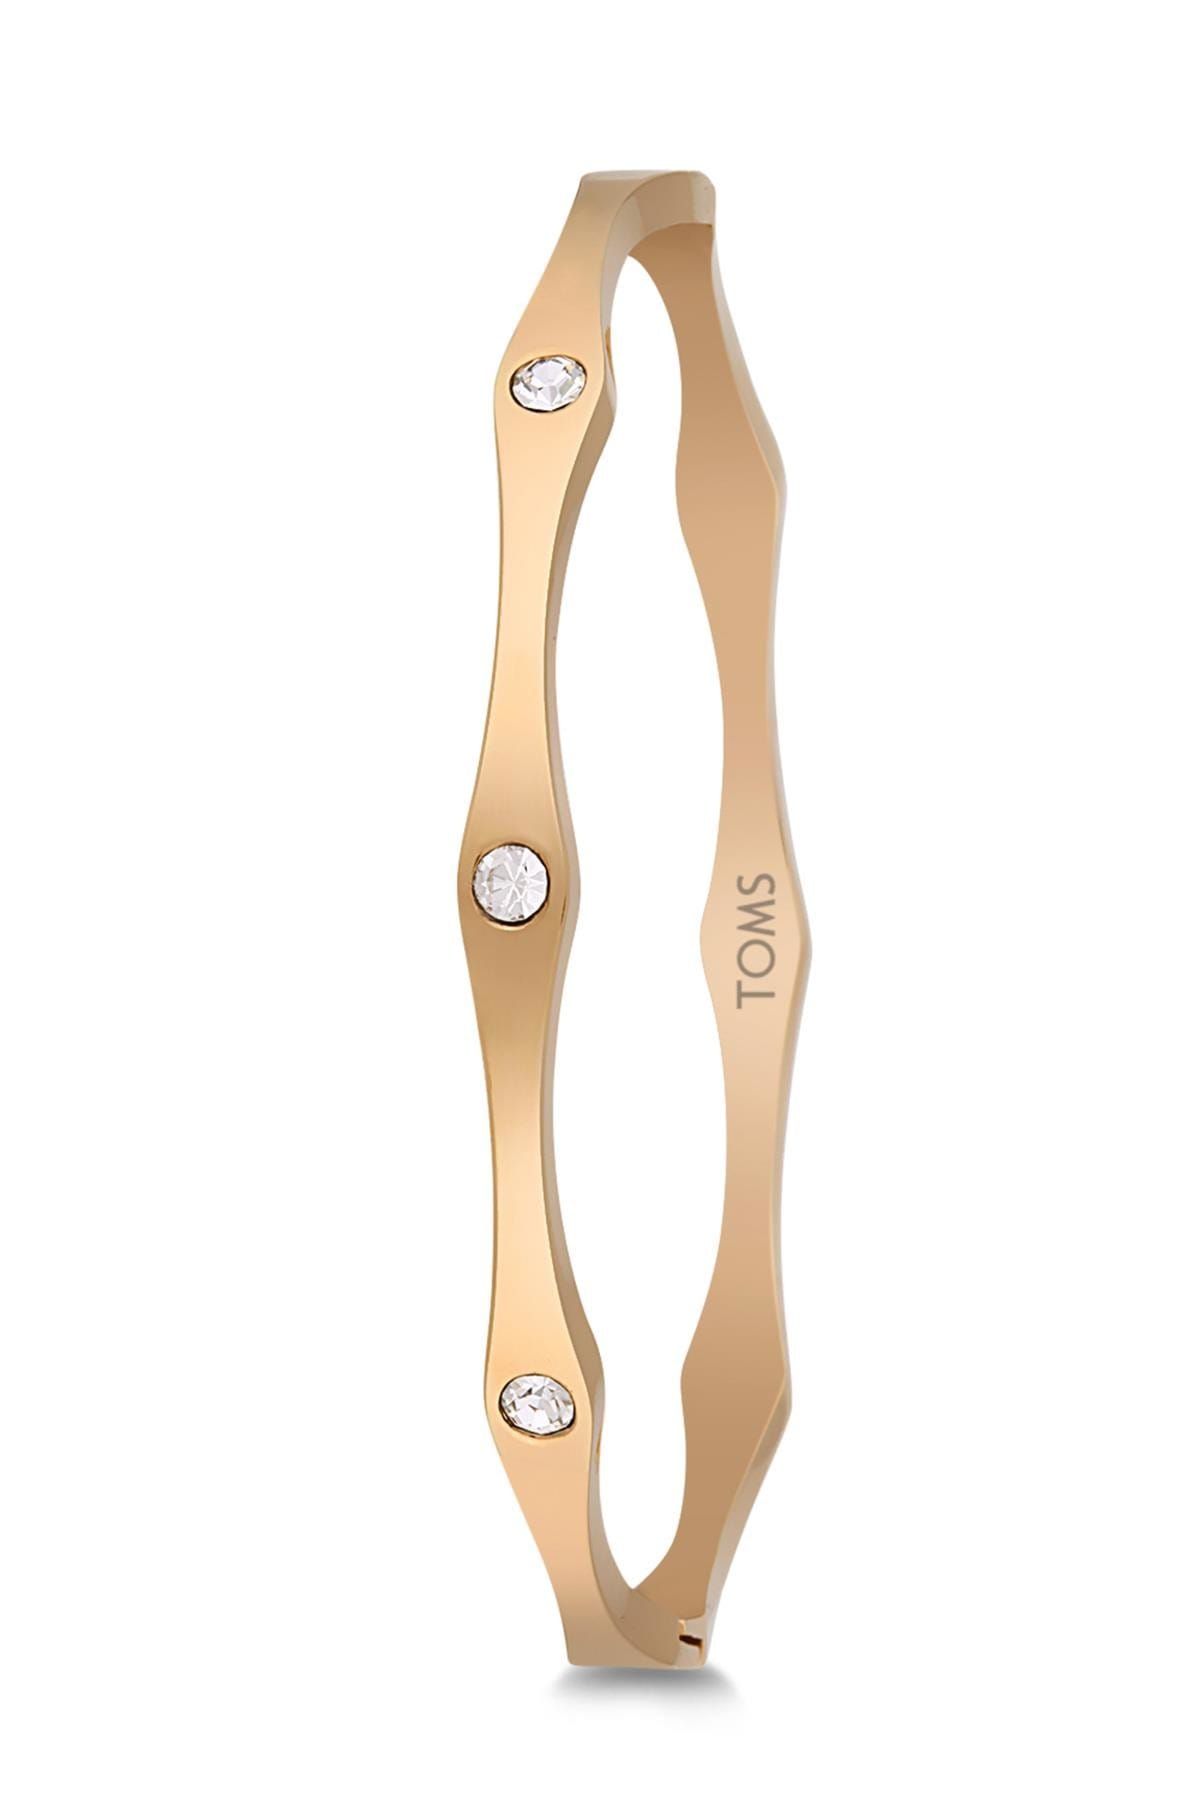 Toms Kadın Altın Rengi Çelik Bileklik TMJ10405-505-G